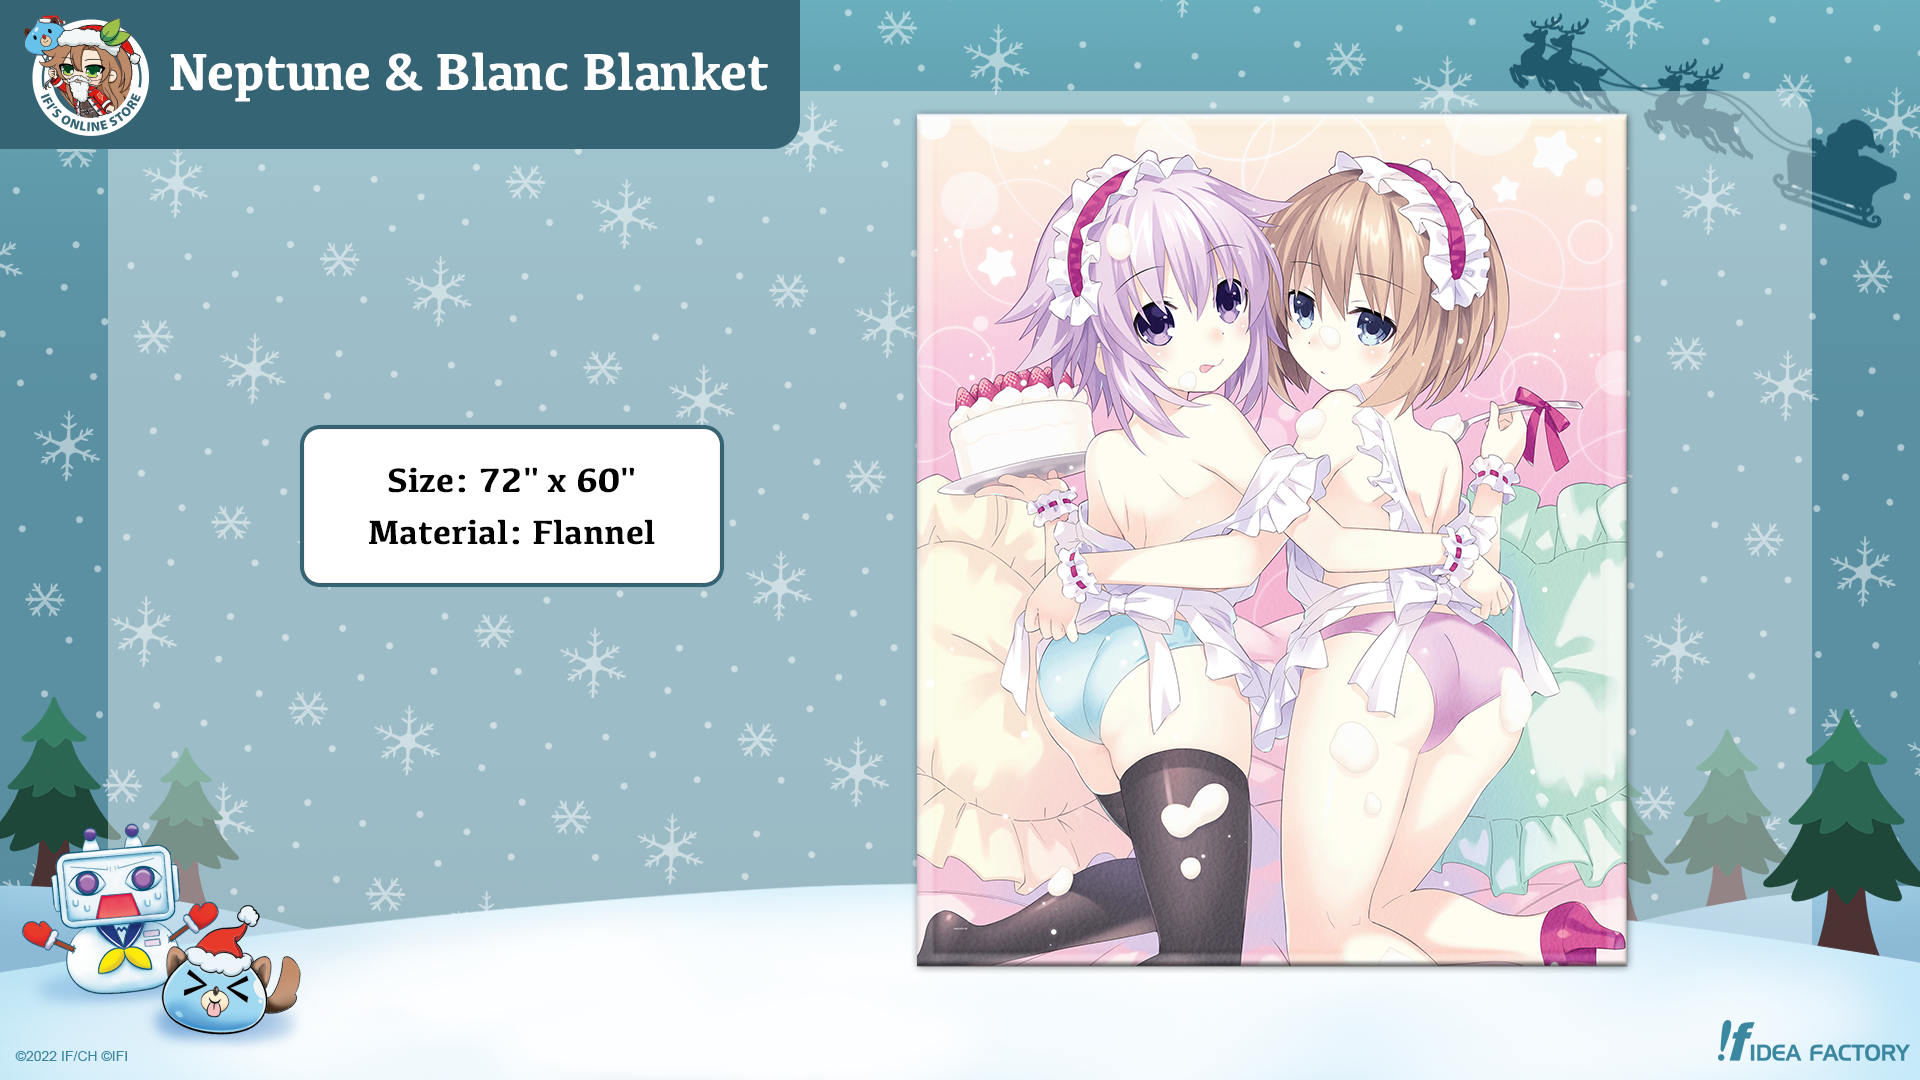 Neptune & Blanc Blanket